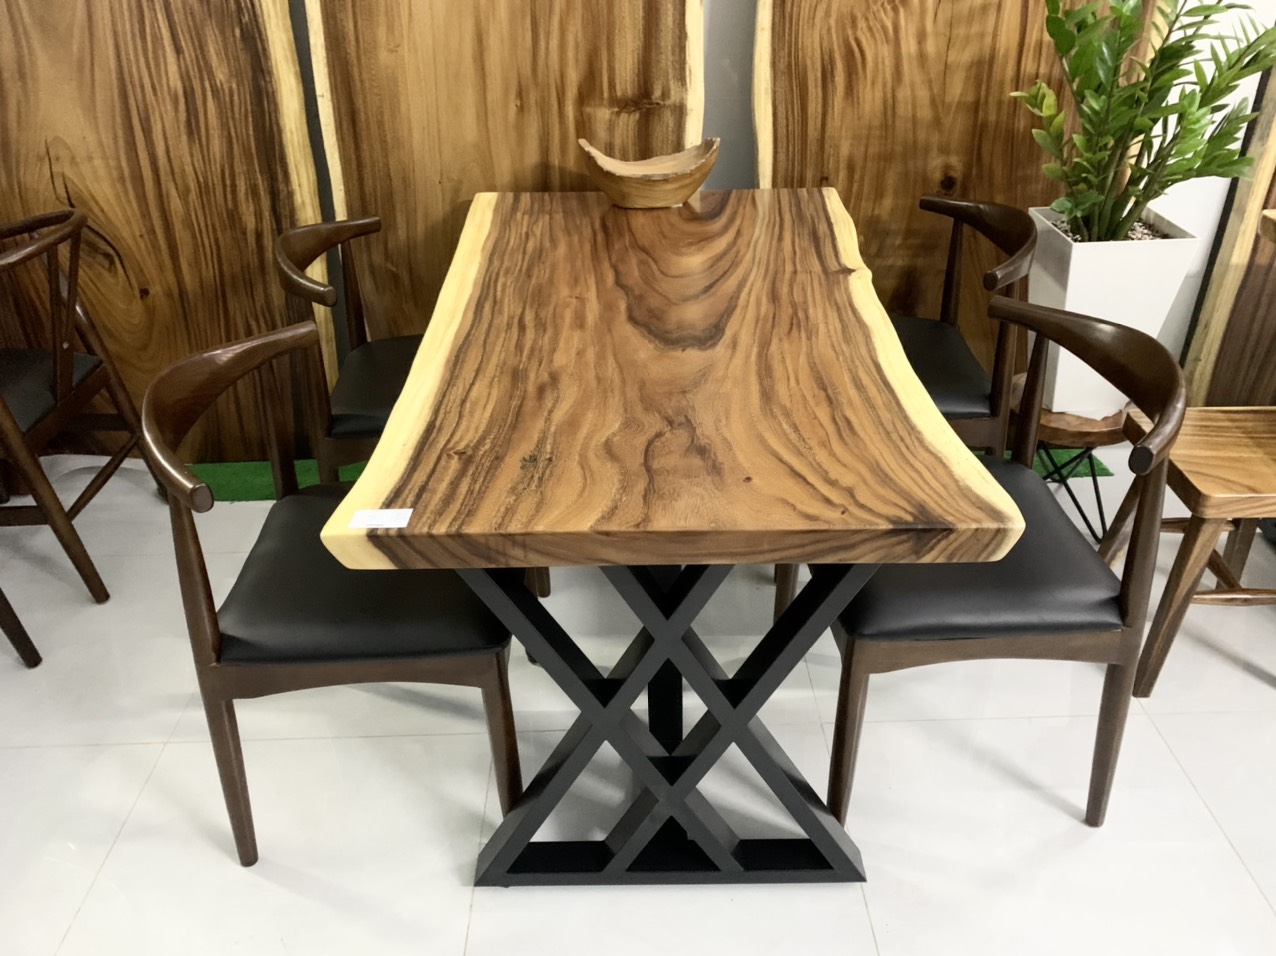 Bộ bàn ghế ăn gỗ nguyên khối là một sự lựa chọn đầy sang trọng và tinh tế cho gia đình bạn. Với những sản phẩm được thiết kế và sản xuất bằng chất liệu gỗ cao cấp, các sản phẩm bàn ghế ăn ngày càng được khách hàng quan tâm và ưa chuộng. Năm 2024, sản phẩm bộ bàn ghế ăn gỗ nguyên khối vẫn giữ được vị trí của mình, làm hài lòng khách hàng khó tính nhất.